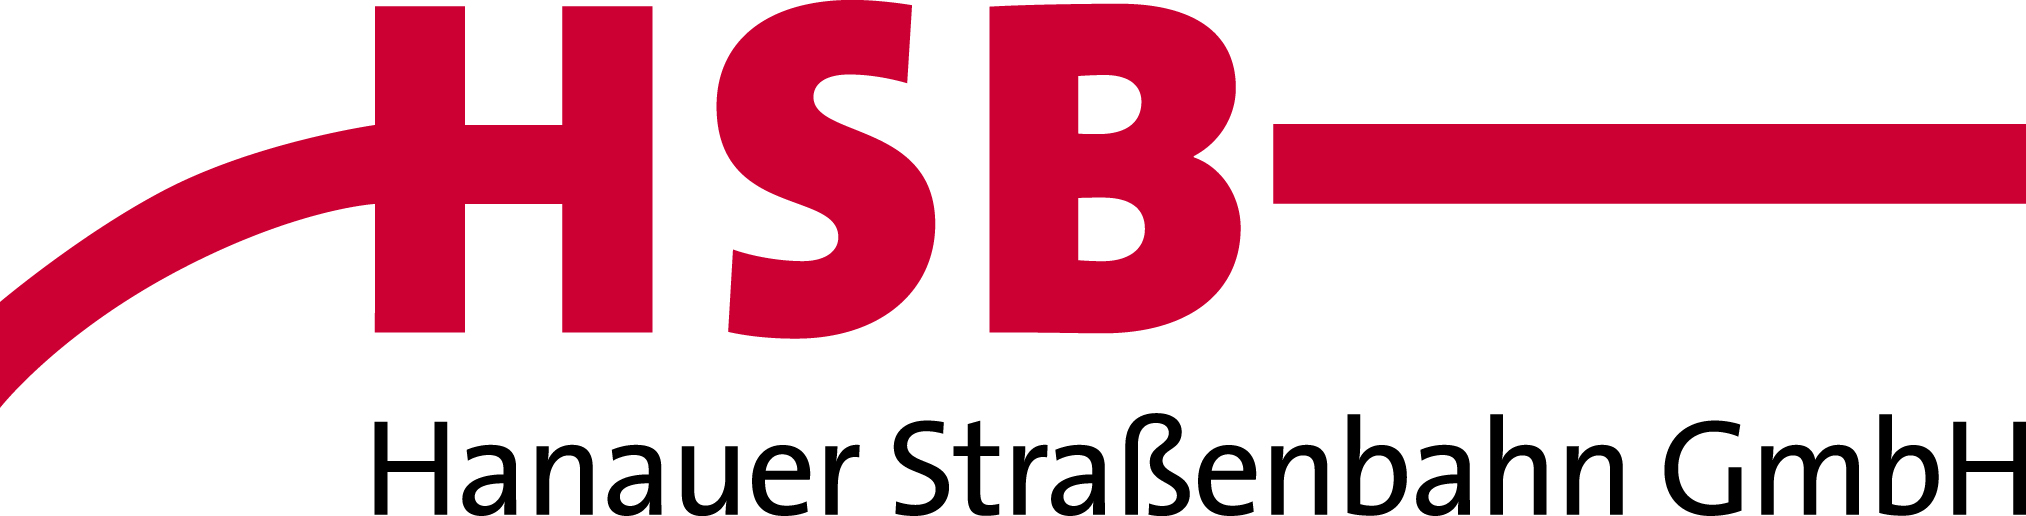 Hsb-logo Rgb